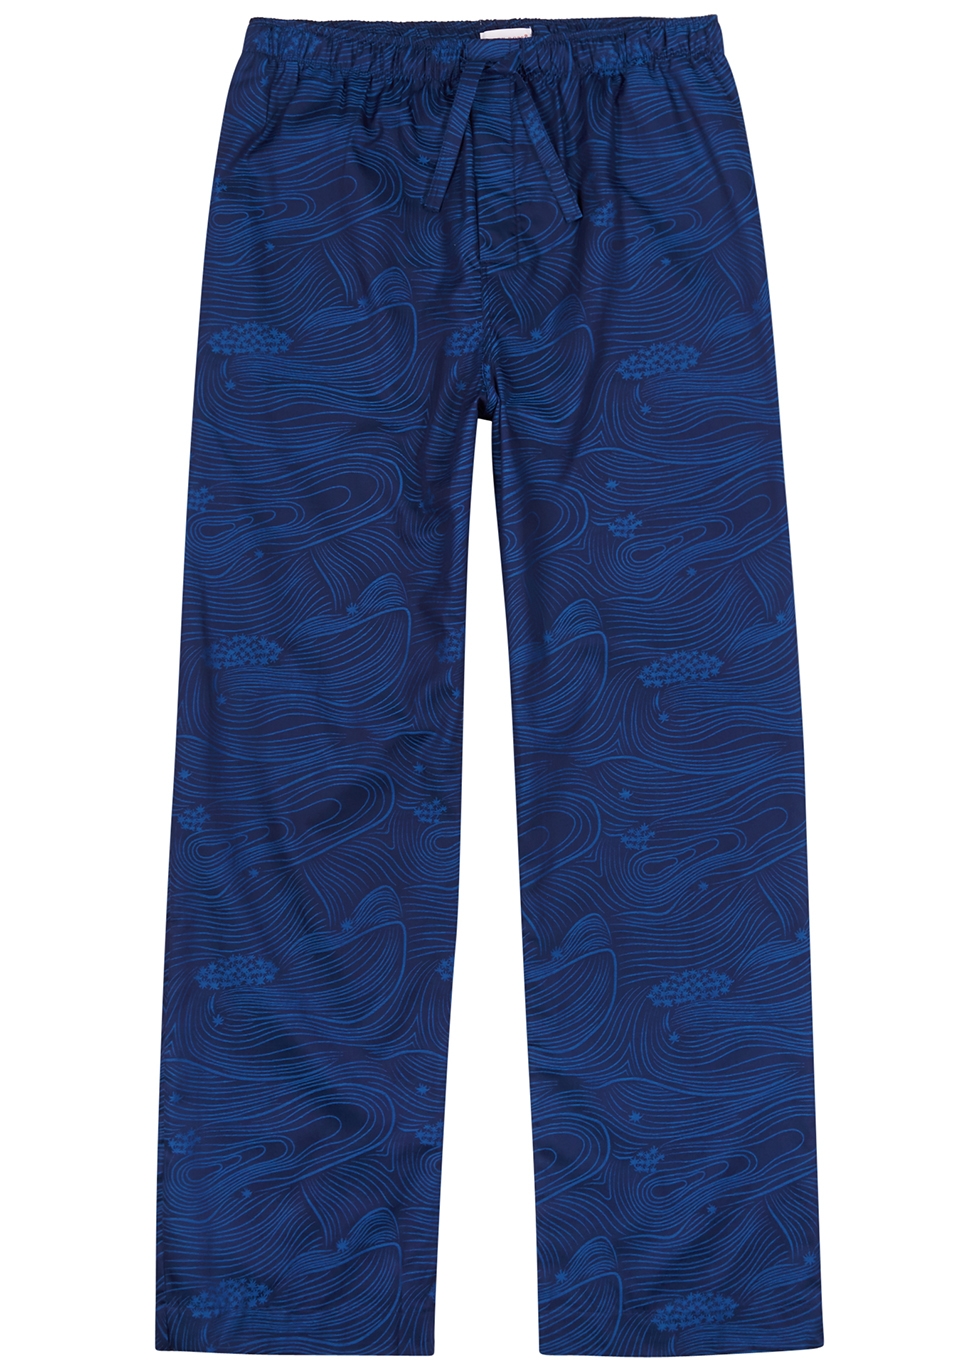 Paris 22 blue printed cotton pyjama trousers